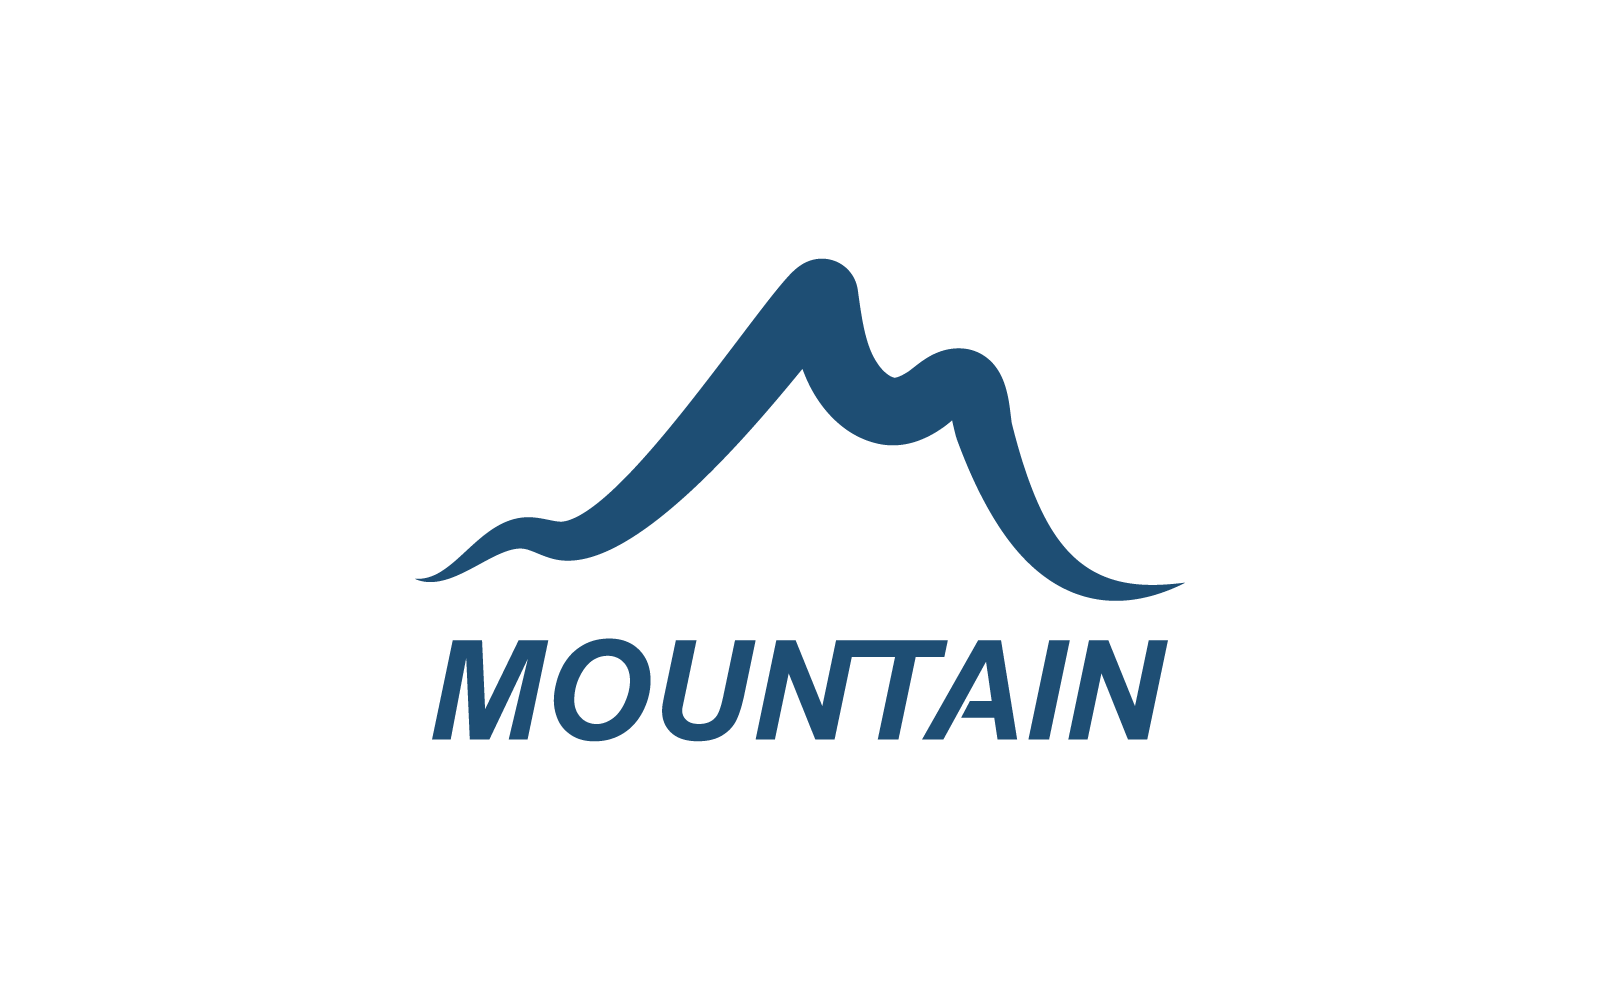 Mountain illustration template logo vector design